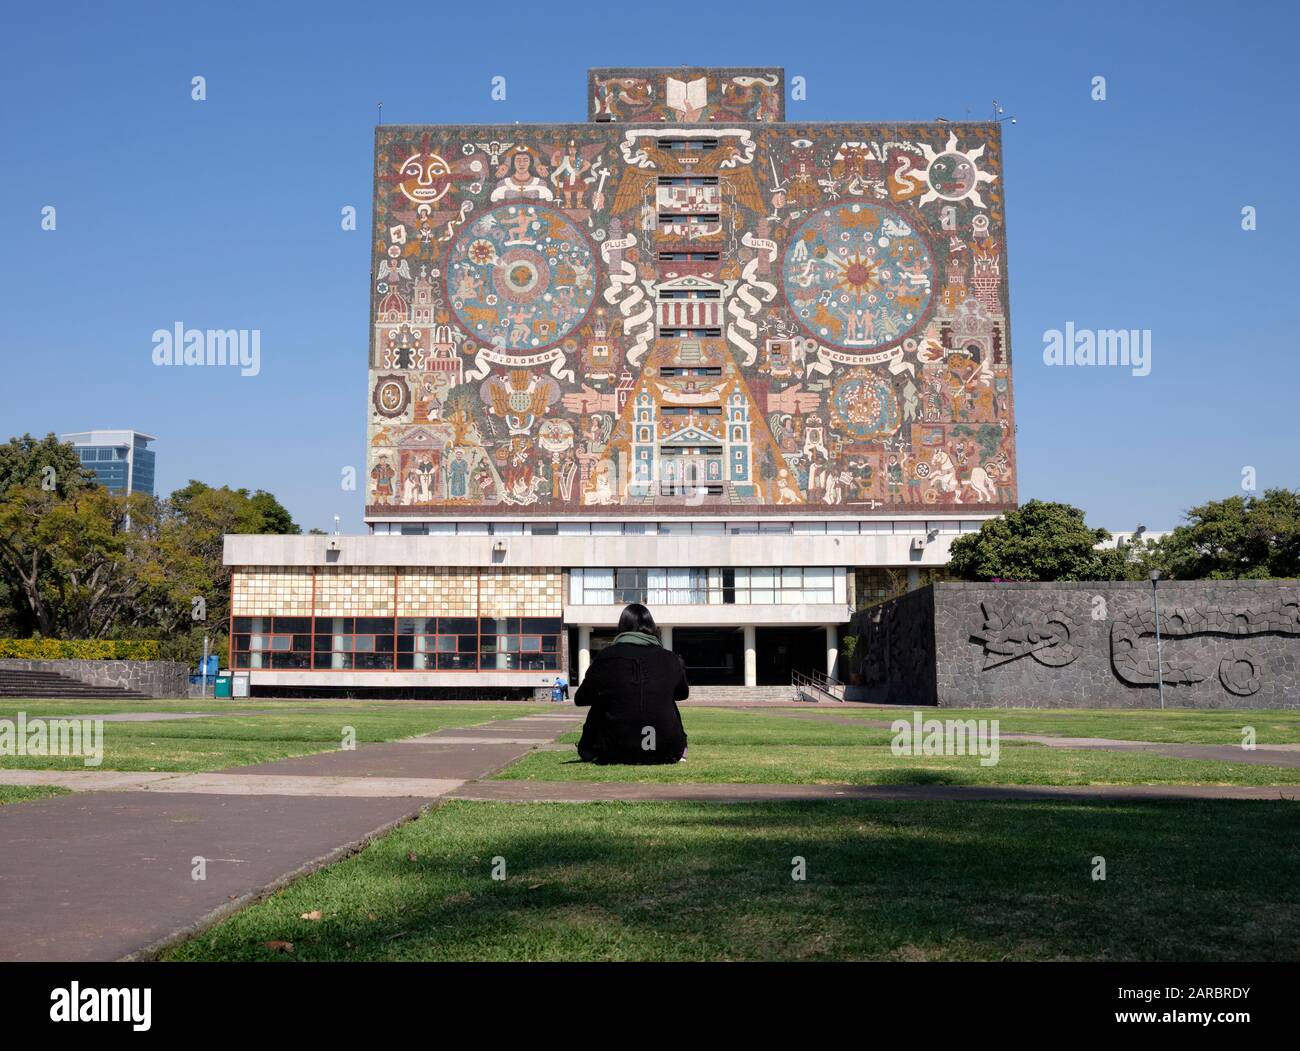 Ciudad de México Universidad campus biblioteca fachada icónica creado por el artista mexicano Juan o'Gorman con alguien sentado mirando a ella Foto de stock